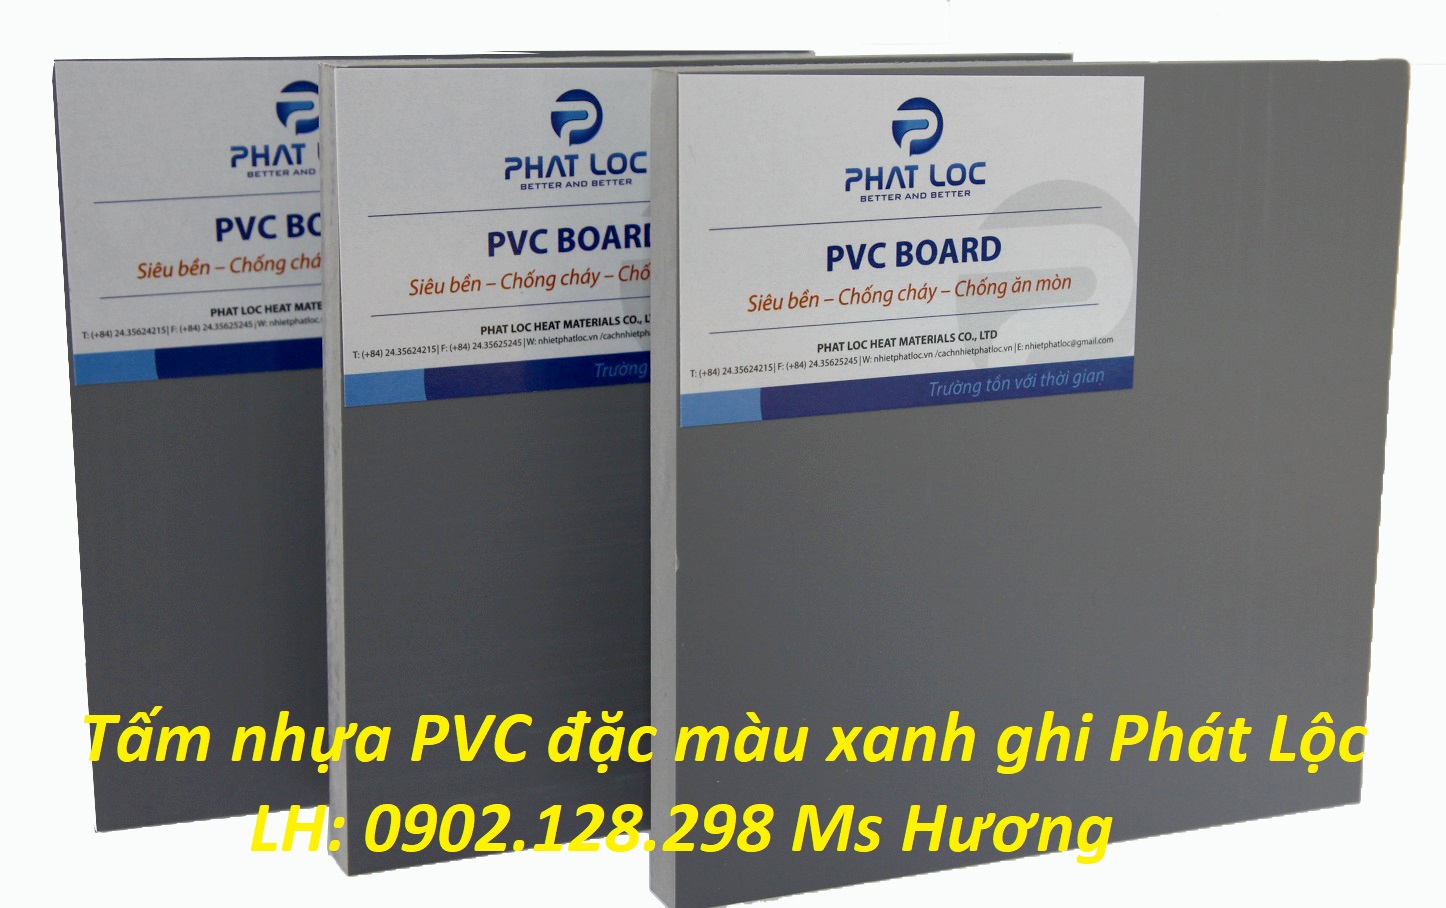 Tấm nhựa PP, PVC đặc thương hiệu Phát Lộc - hàng Việt Nam chất lượng cao